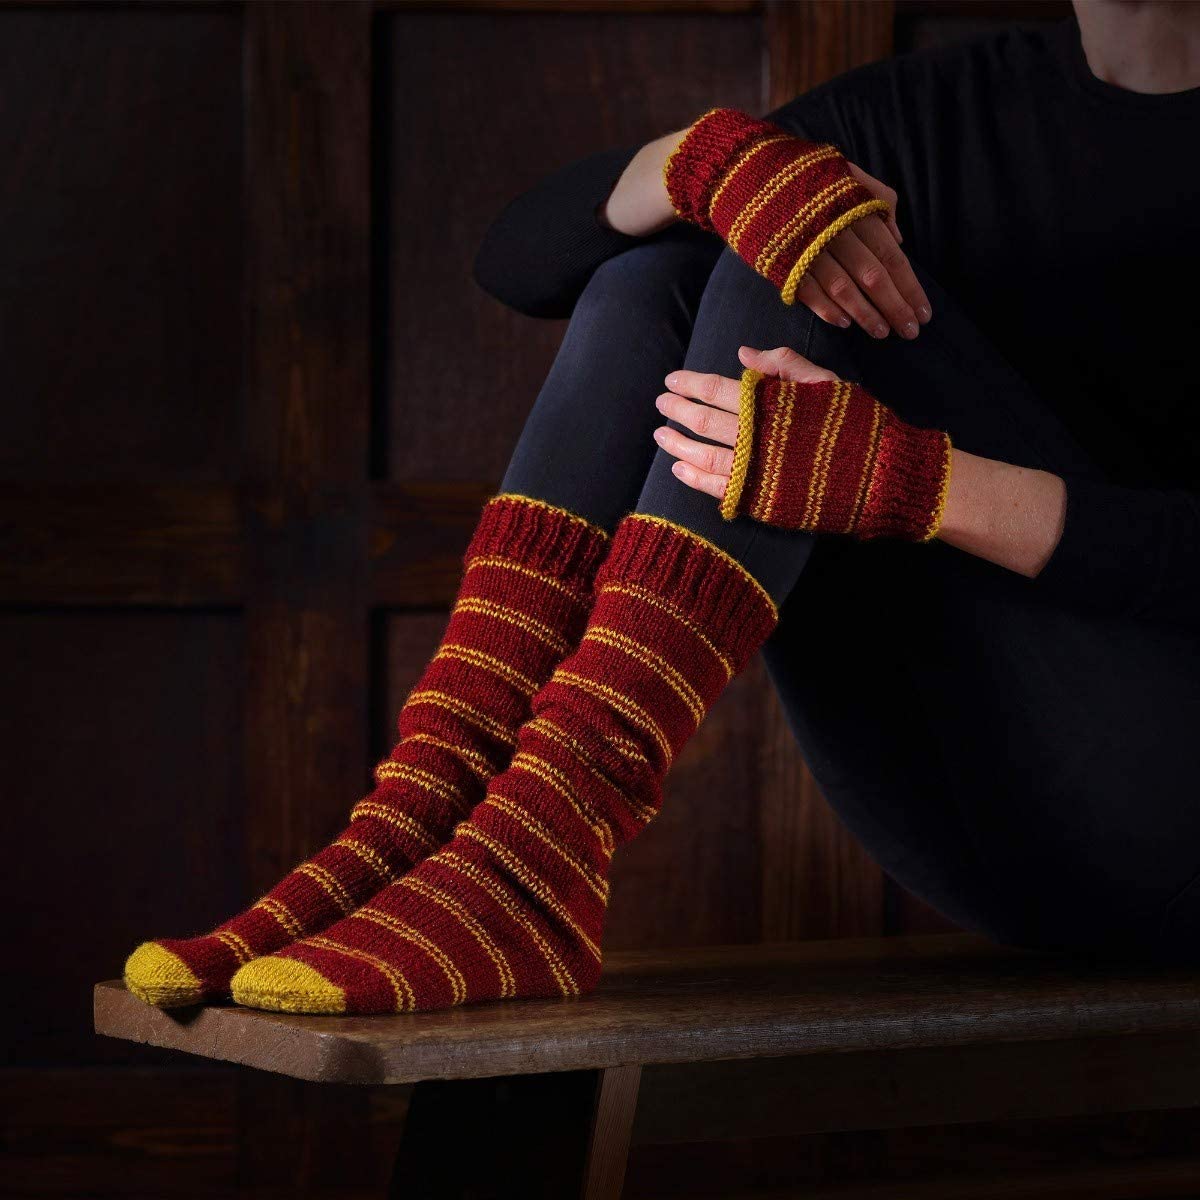 Harry Potter - Kit de tricot pour moufles et chaussettes hautes Gryffondor